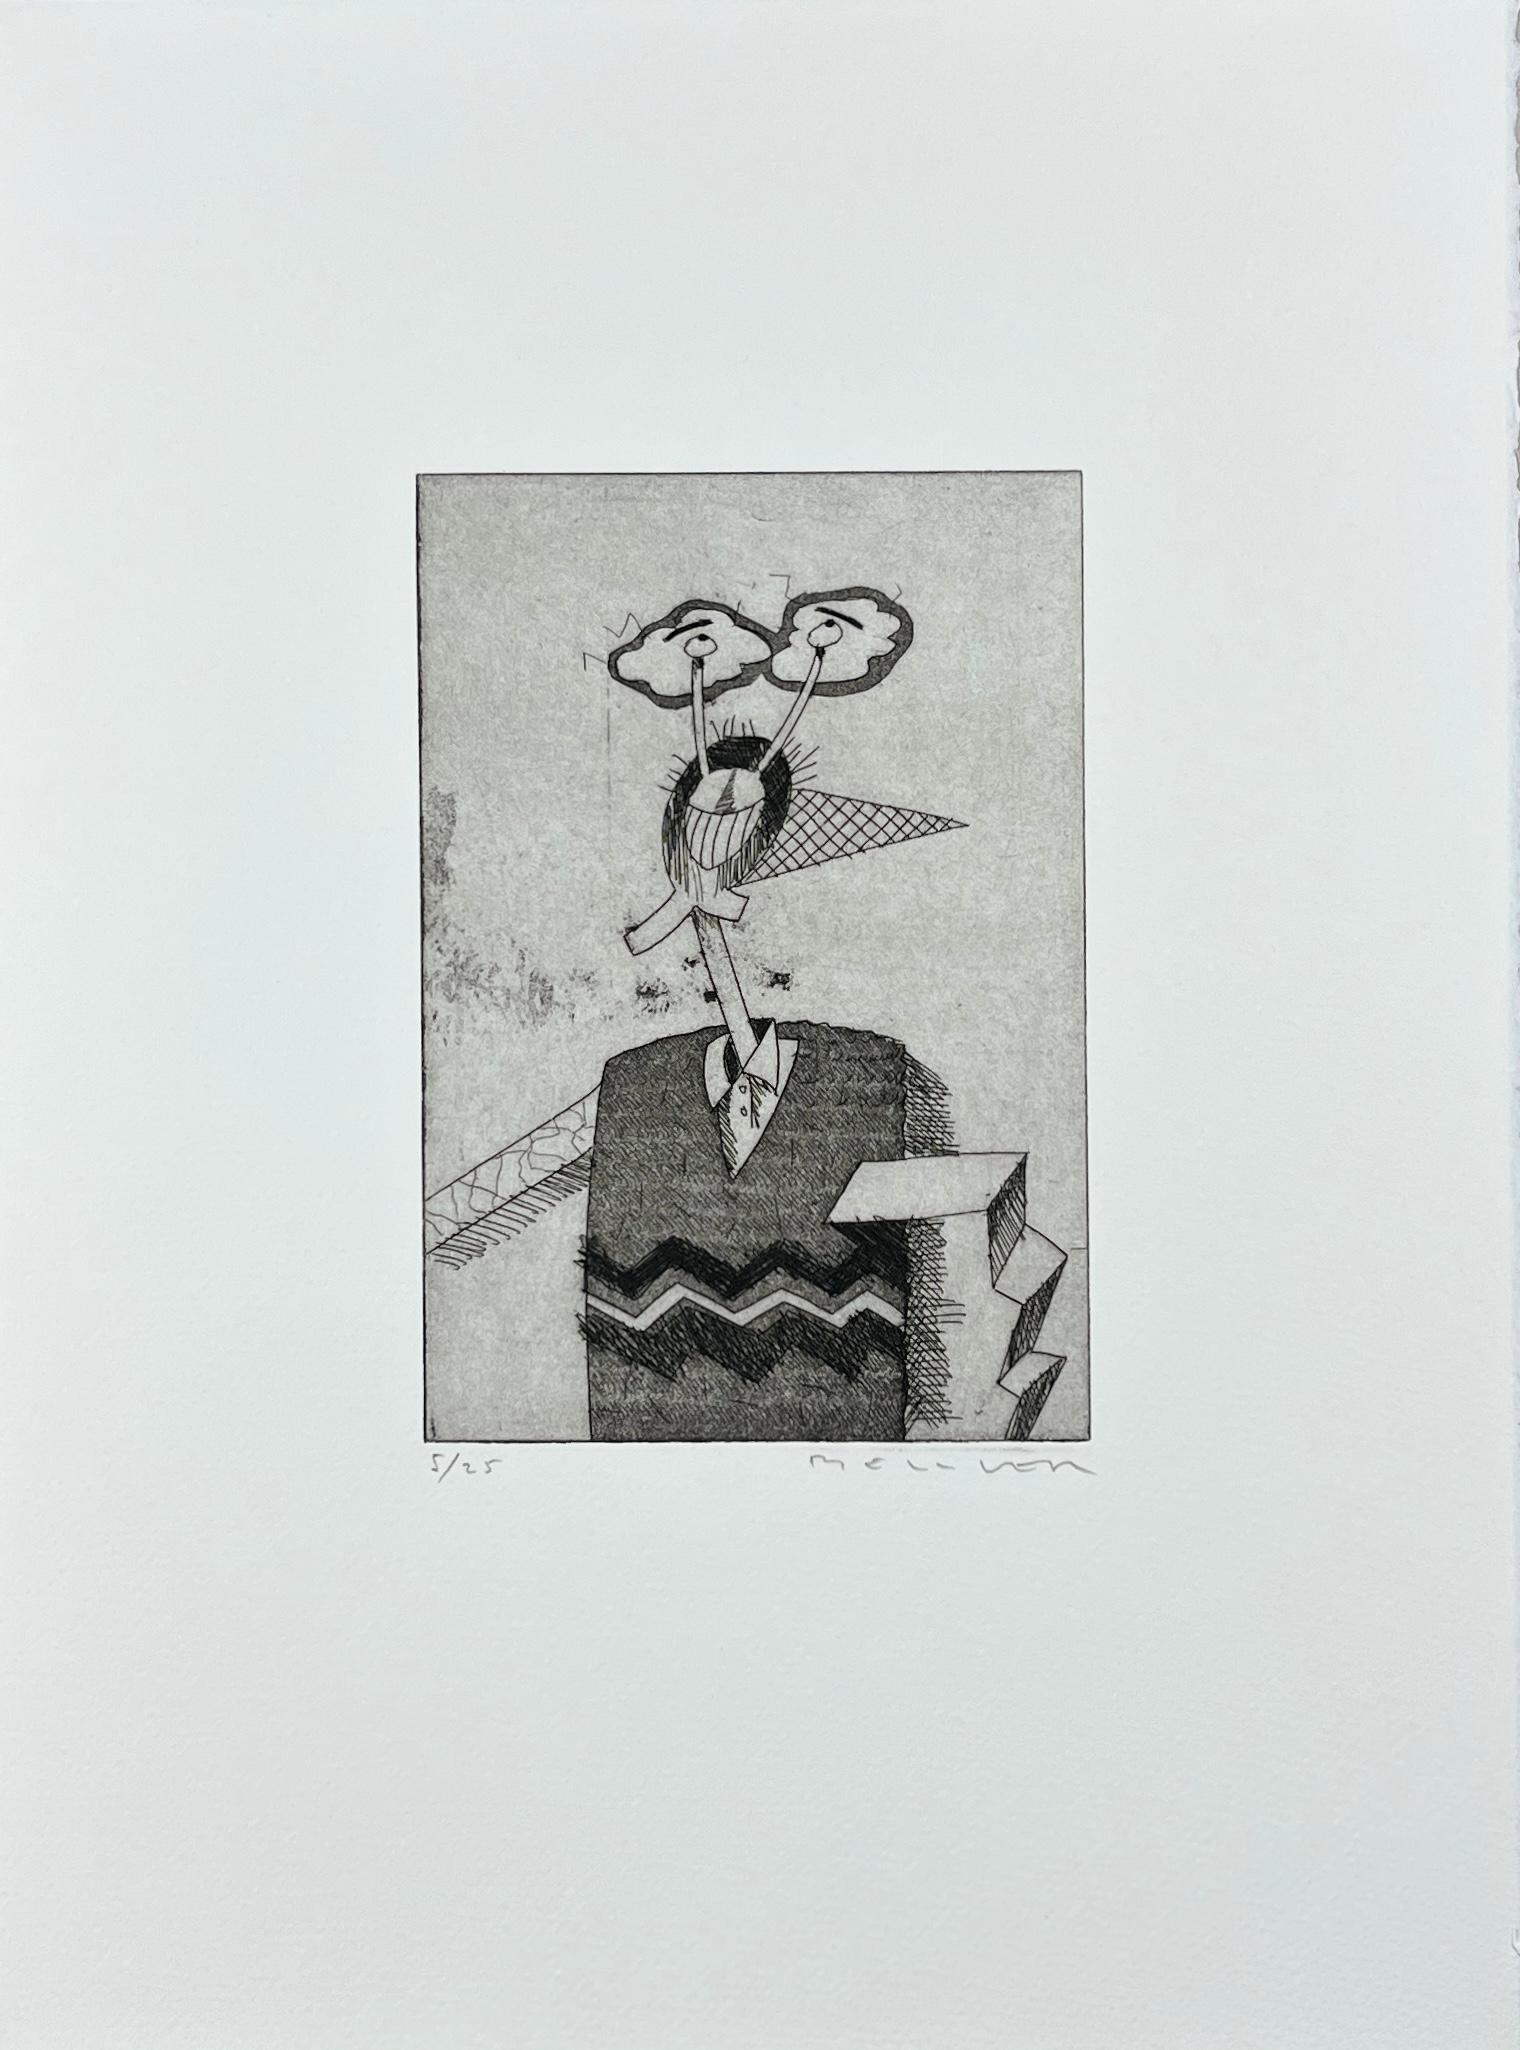 Spanischer 1986 signierter Original-Kunstdruck in limitierter Auflage, Radierung 15x11 in. – Print von Fernando Bellver